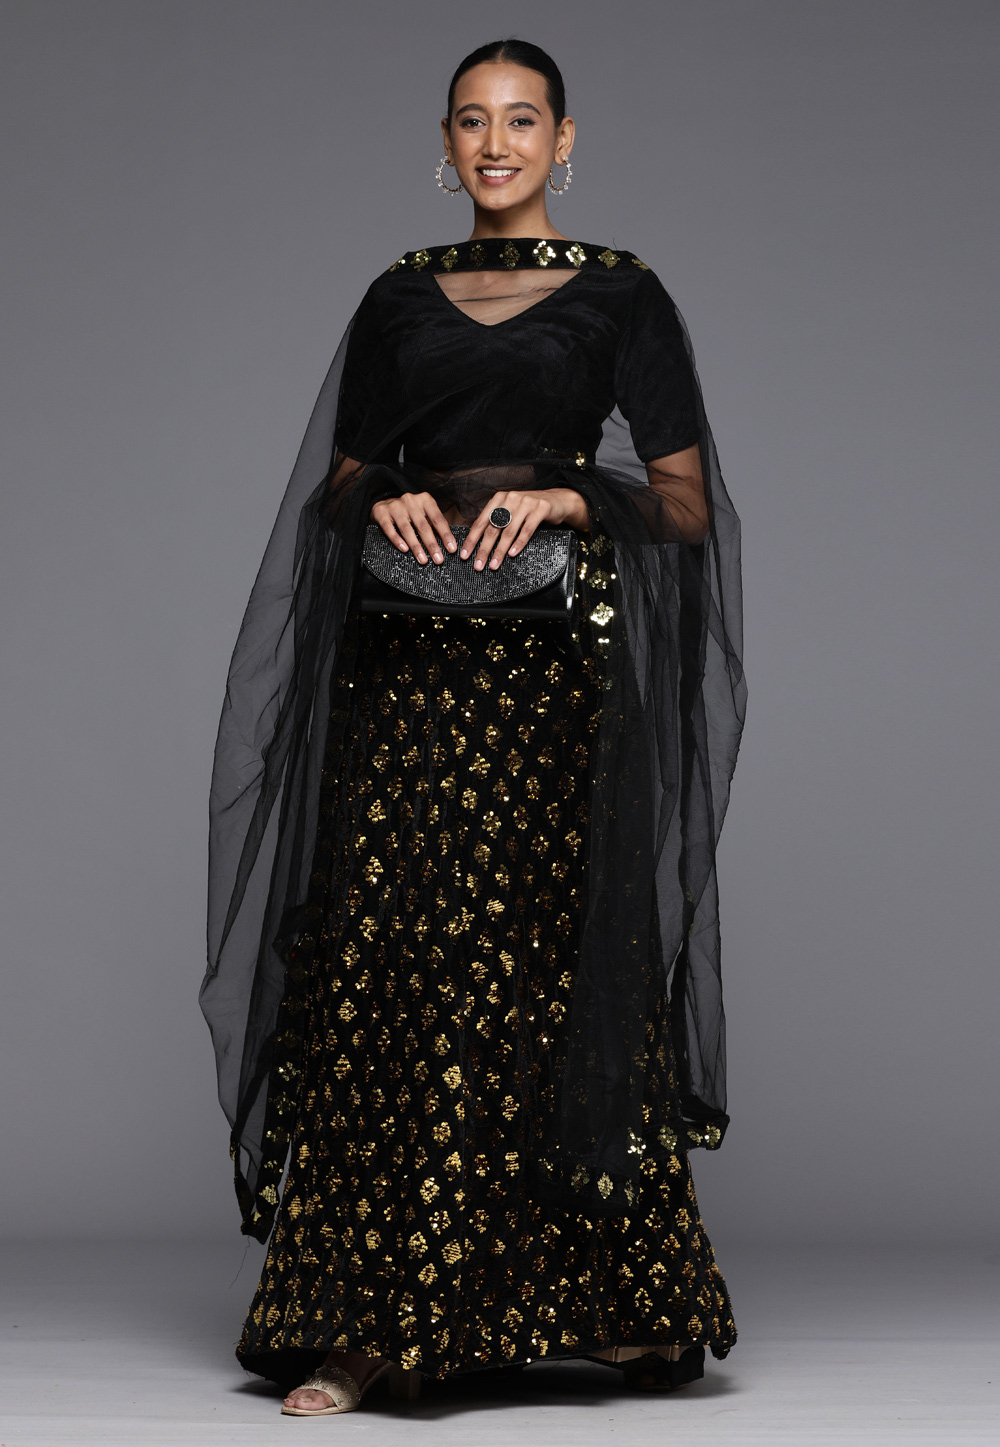 Heavy Saree Blouse For Wedding: वेडिंग परफेक्ट हेवी साड़ी के लिए 20 साड़ी  ब्लाउज़ डिज़ाइन | Blouse designs for heavy saree looks